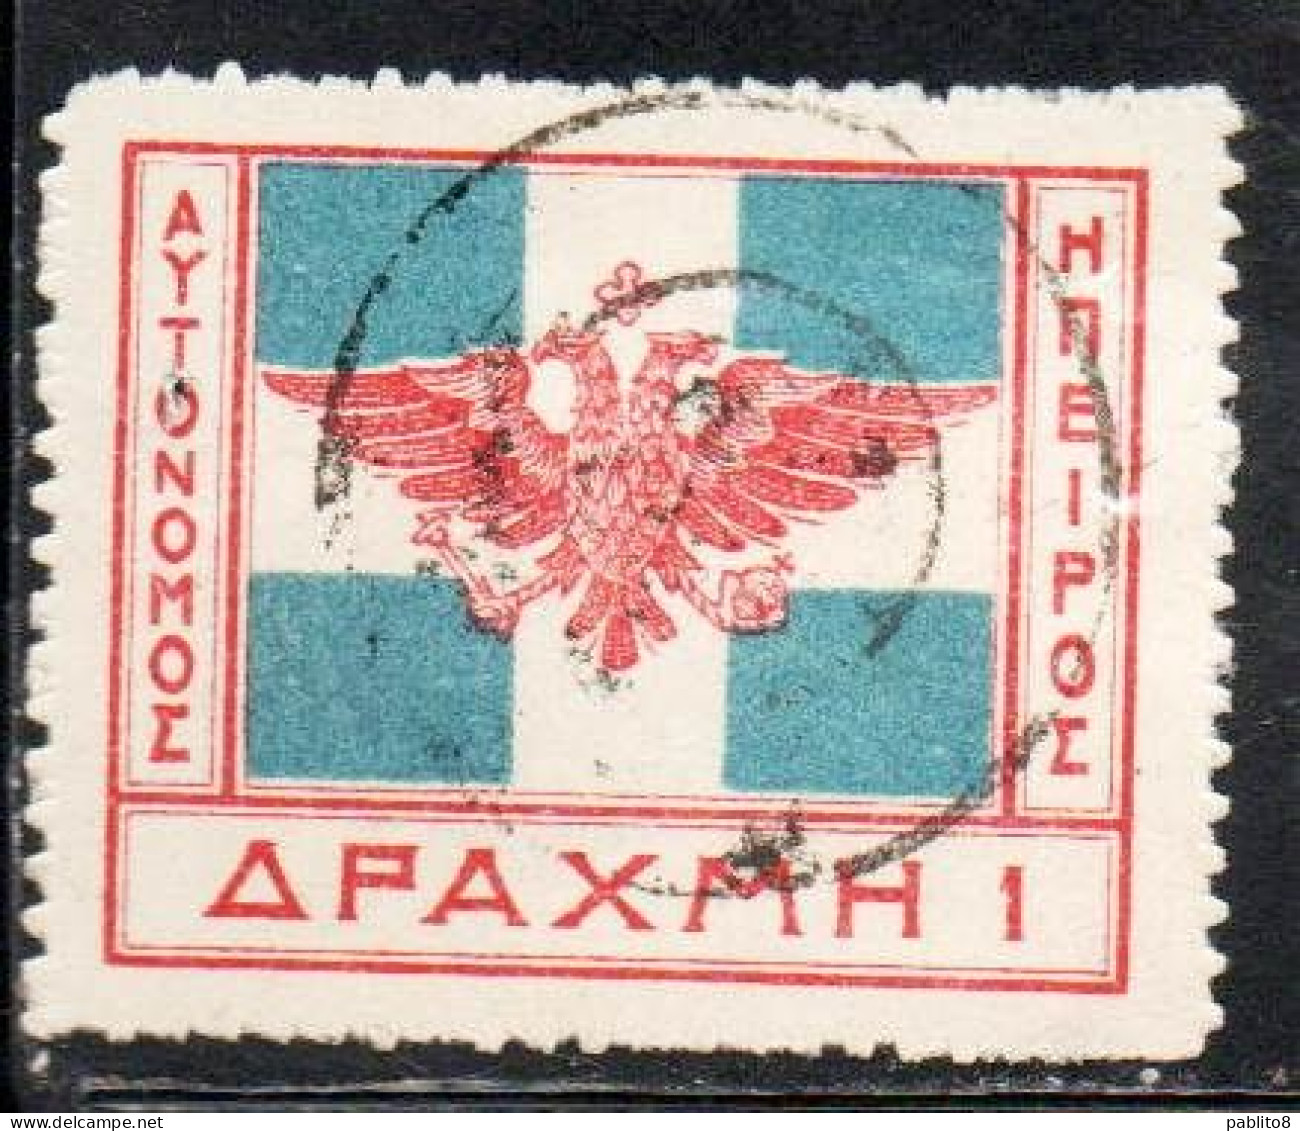 GREECE GRECIA HELLAS EPIRUS EPIRO 1914 ARMS FLAG 1d USED USATO OBLITERE' - Epirus & Albania